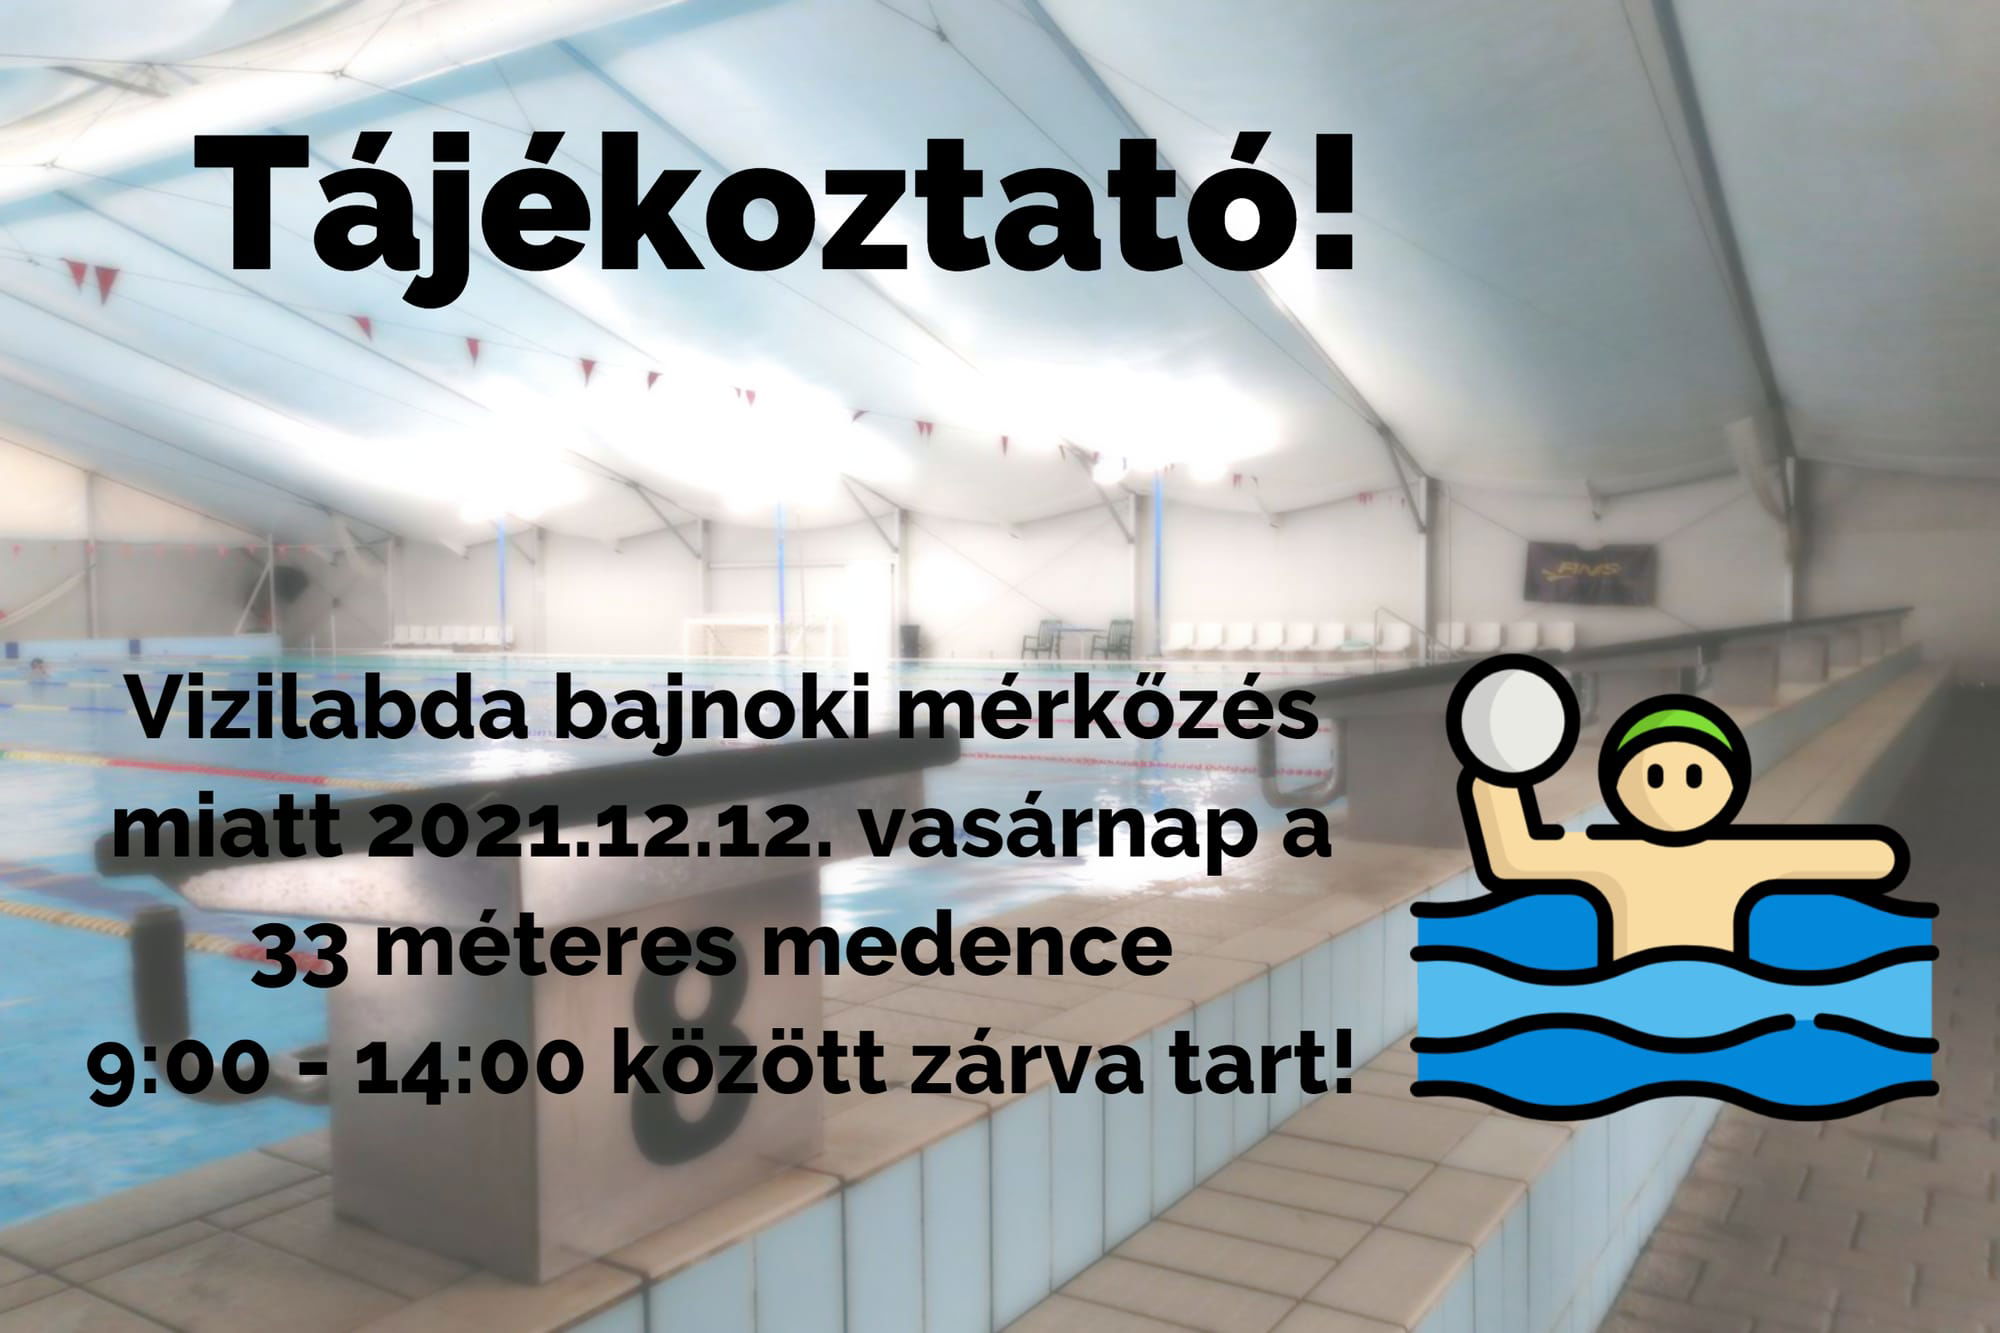 Vasárnap (2021.12.12) vízilabda bajnoki mérkőzés a 33 méteres medencében!